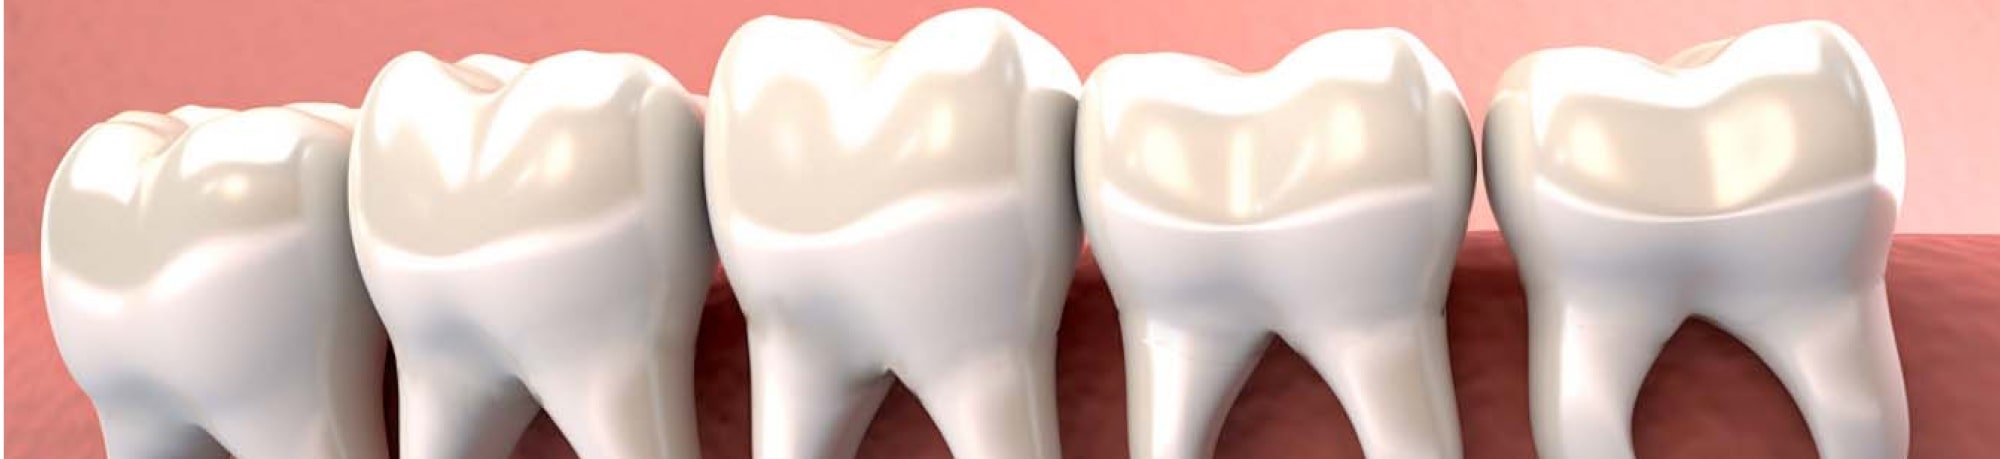 Болит зуб мудрости: причины и лечение